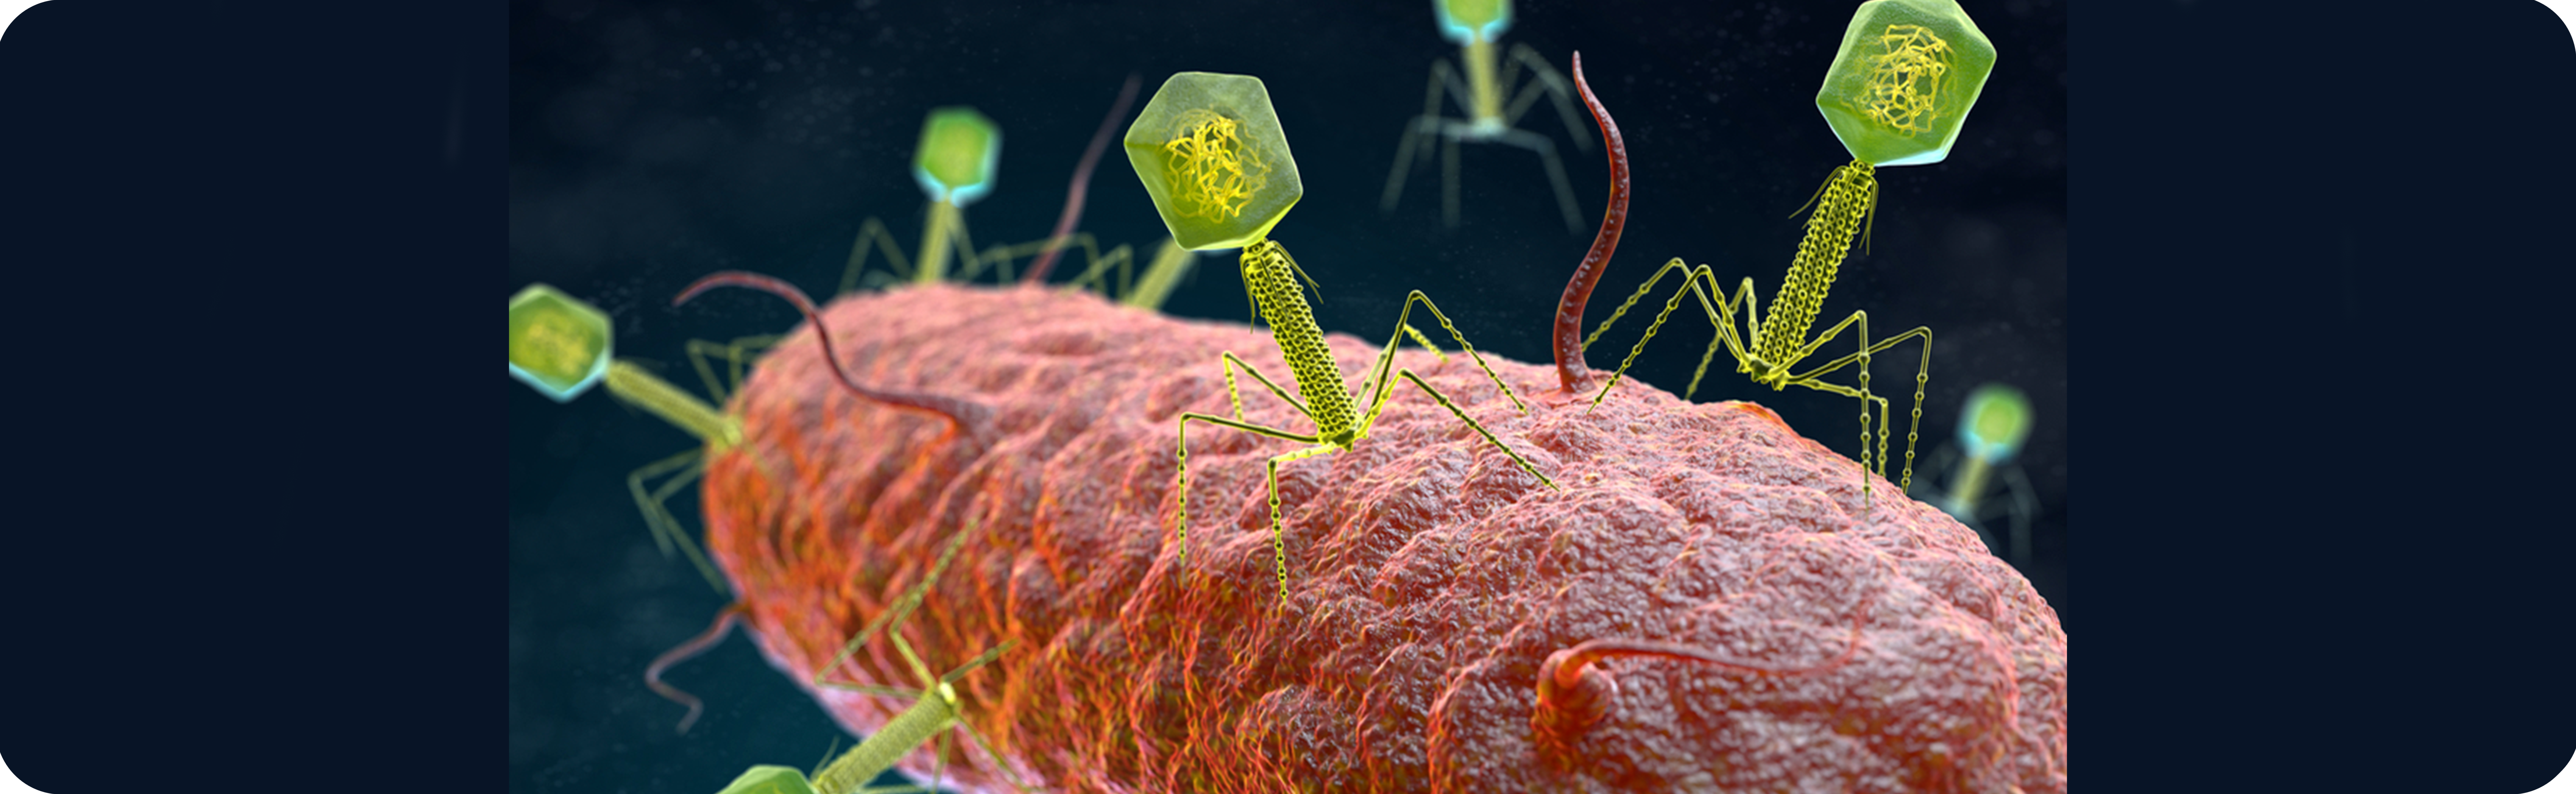 Бактериофаги: достоинства и недостатки